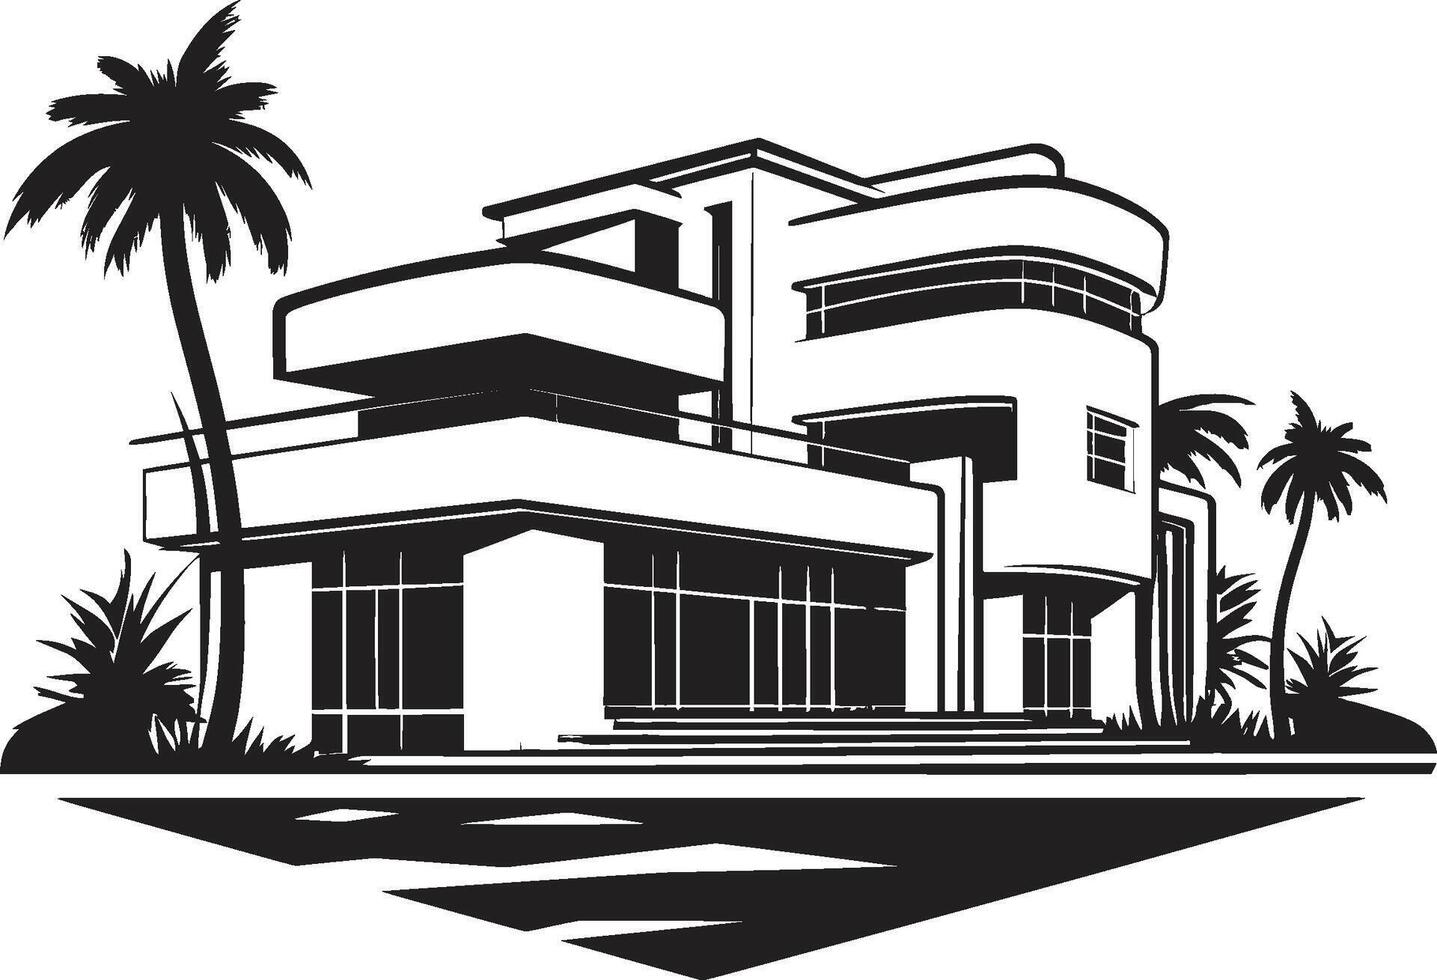 Metropolitan- Rückzug Insignien opulent modern Villa Logo zum Prämie branding städtisch Utopie Kamm Vektor Design von ein modern Villa zum Stadt Leben